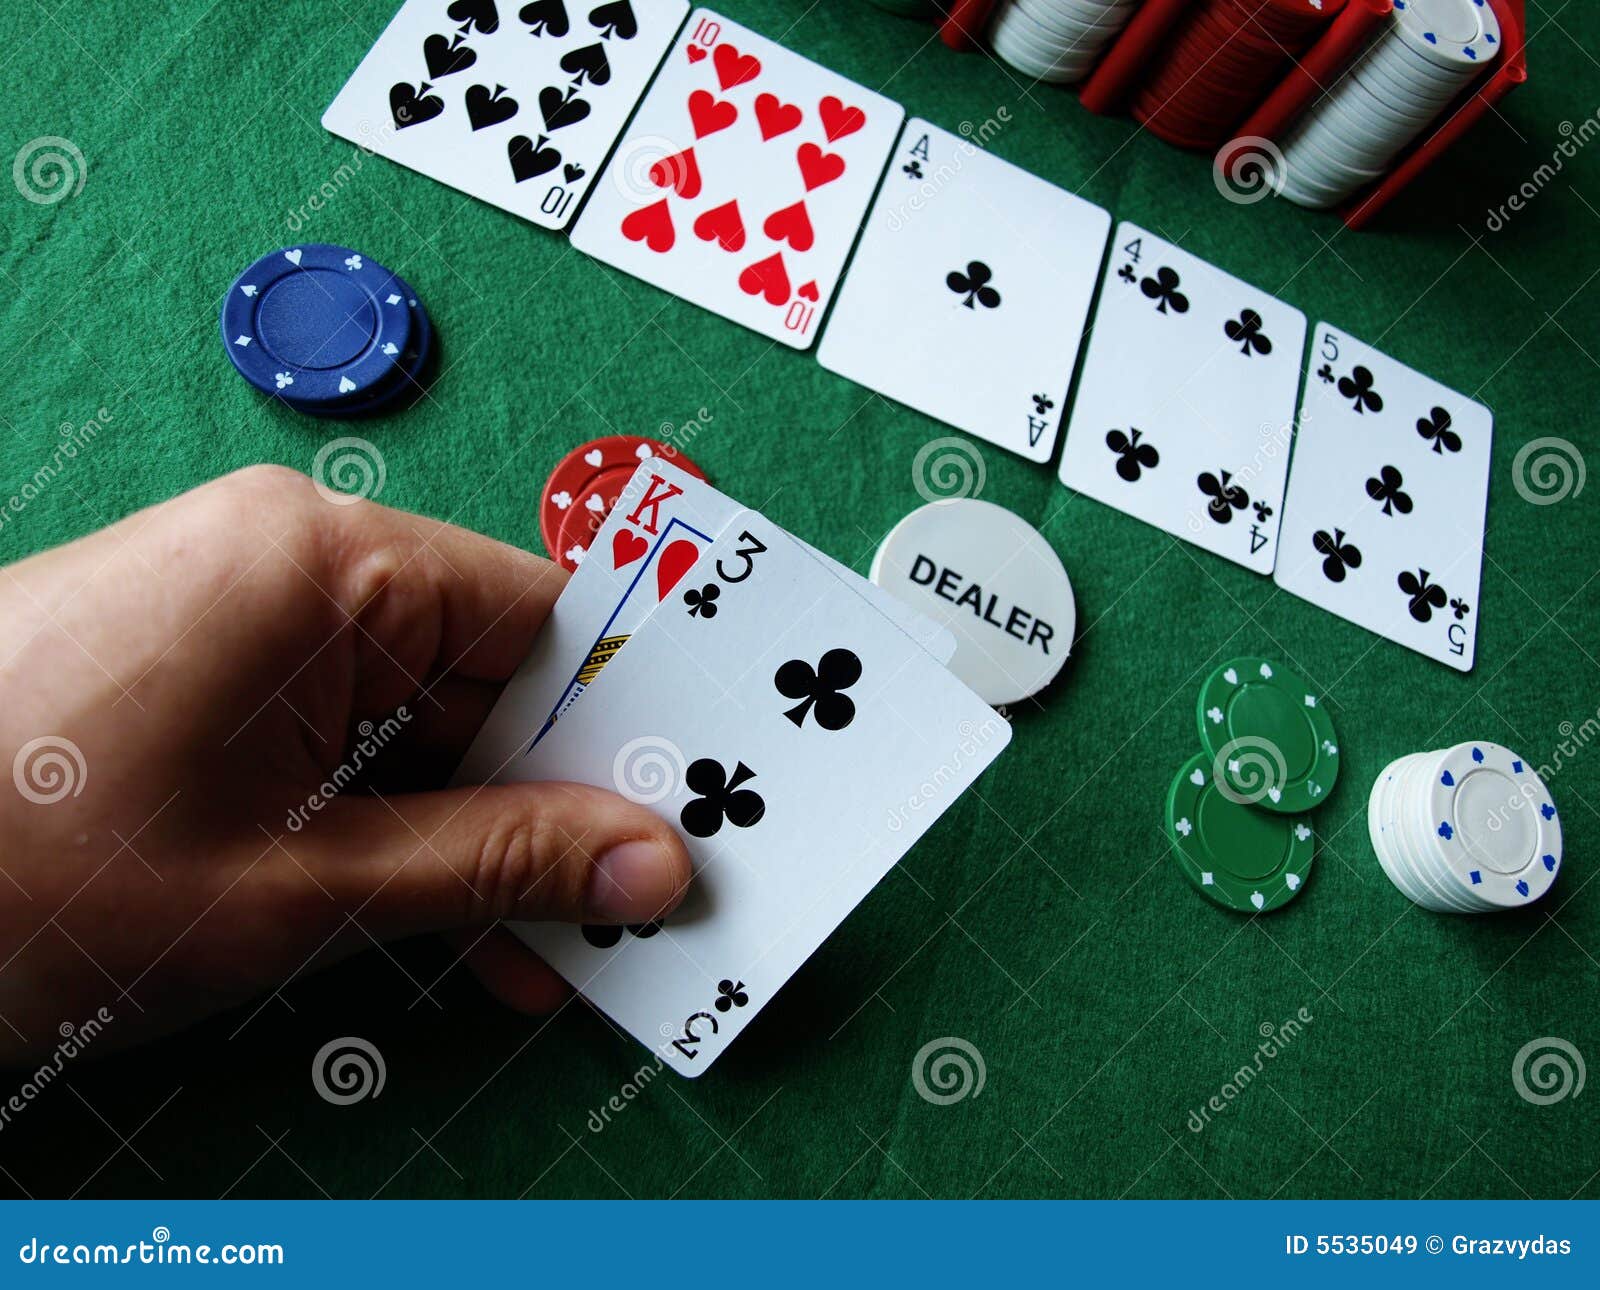 图片素材 : 艺术, 赌场, 赌博, 形状, 扑克, 纸牌游戏, 没有限制holdem 4272x2848 - - 704560 - 素材中国 ...